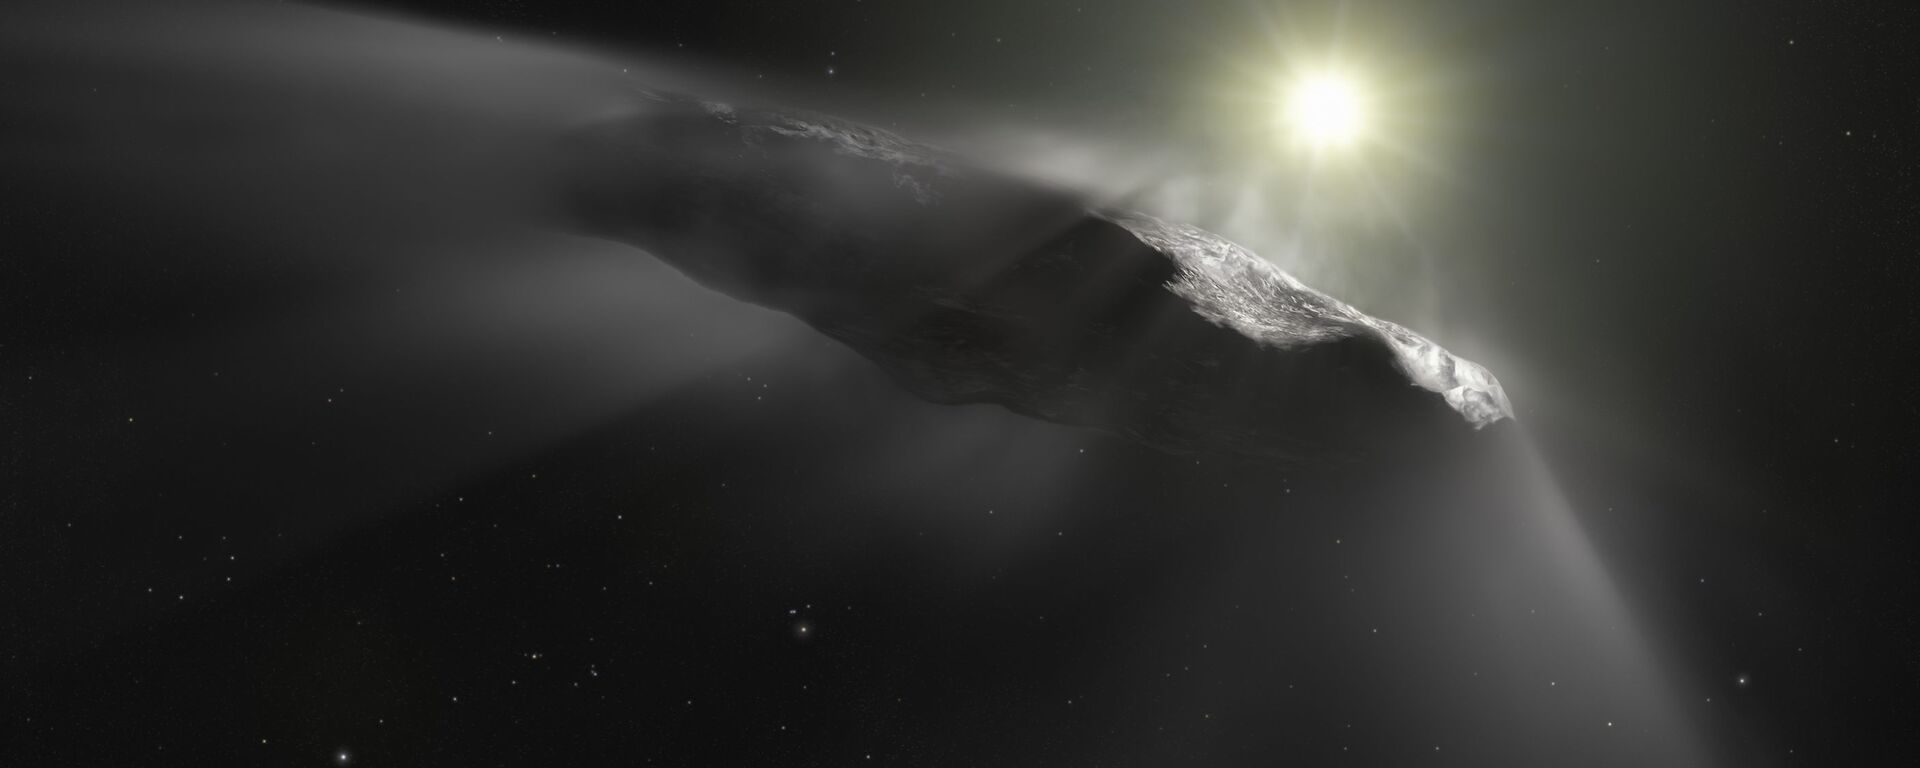 یک سیارک بزرگتر از هرم بزرگ جیزه  به سوی کره زمین پرواز می کند - اسپوتنیک ایران  , 1920, 14.05.2021